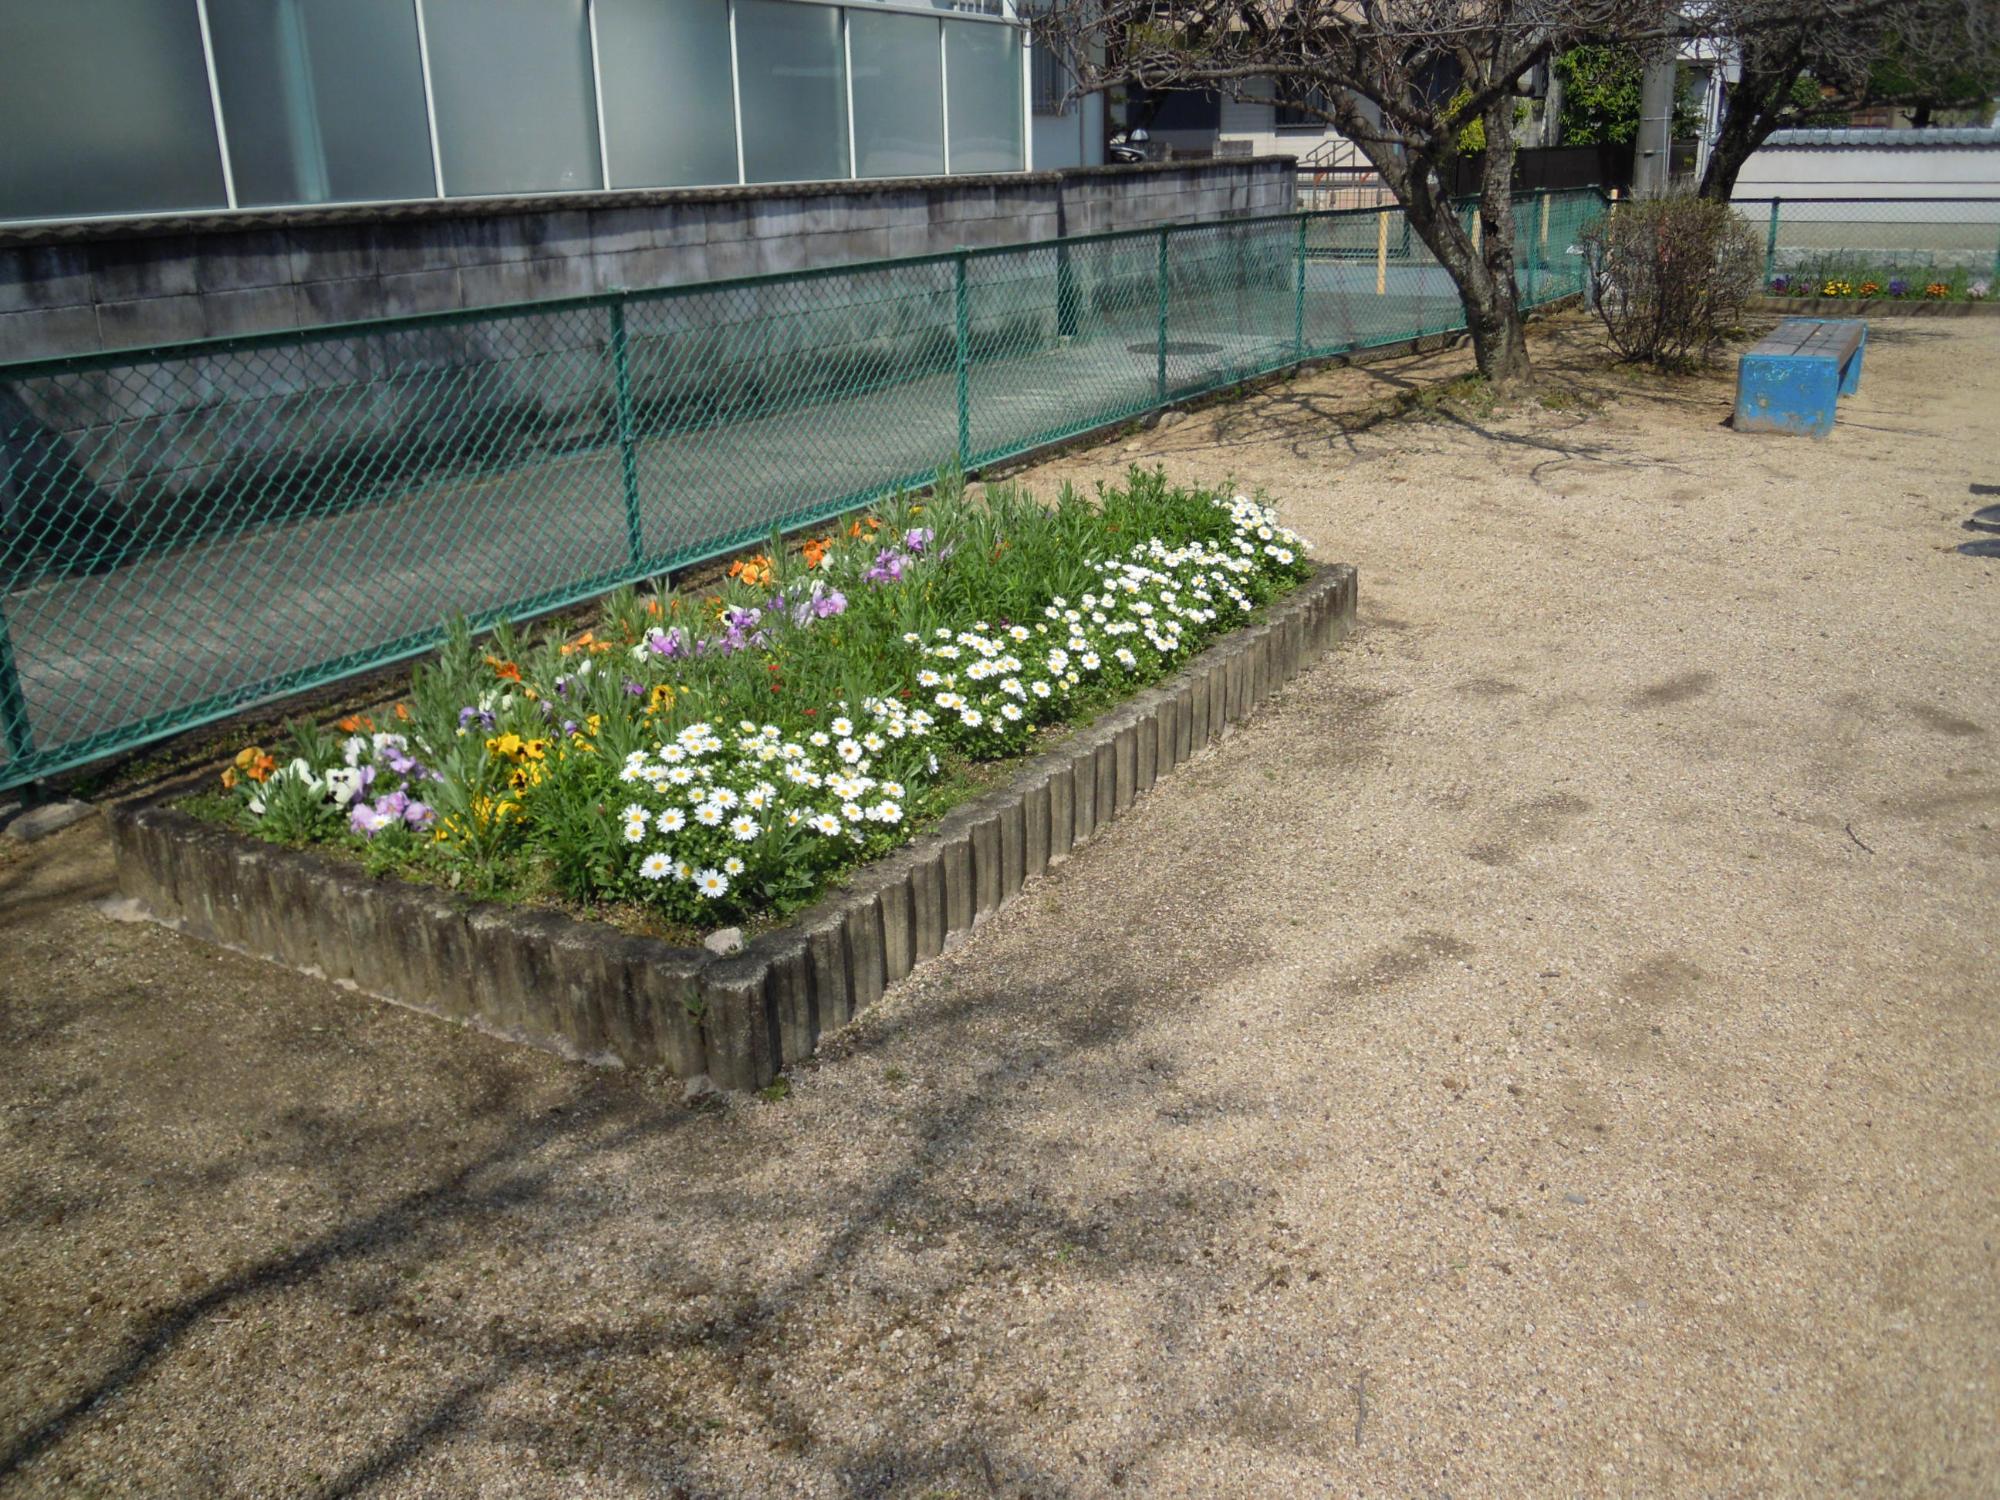 磐余団地児童公園の南側にある色とりどりの花が咲いている花壇の写真